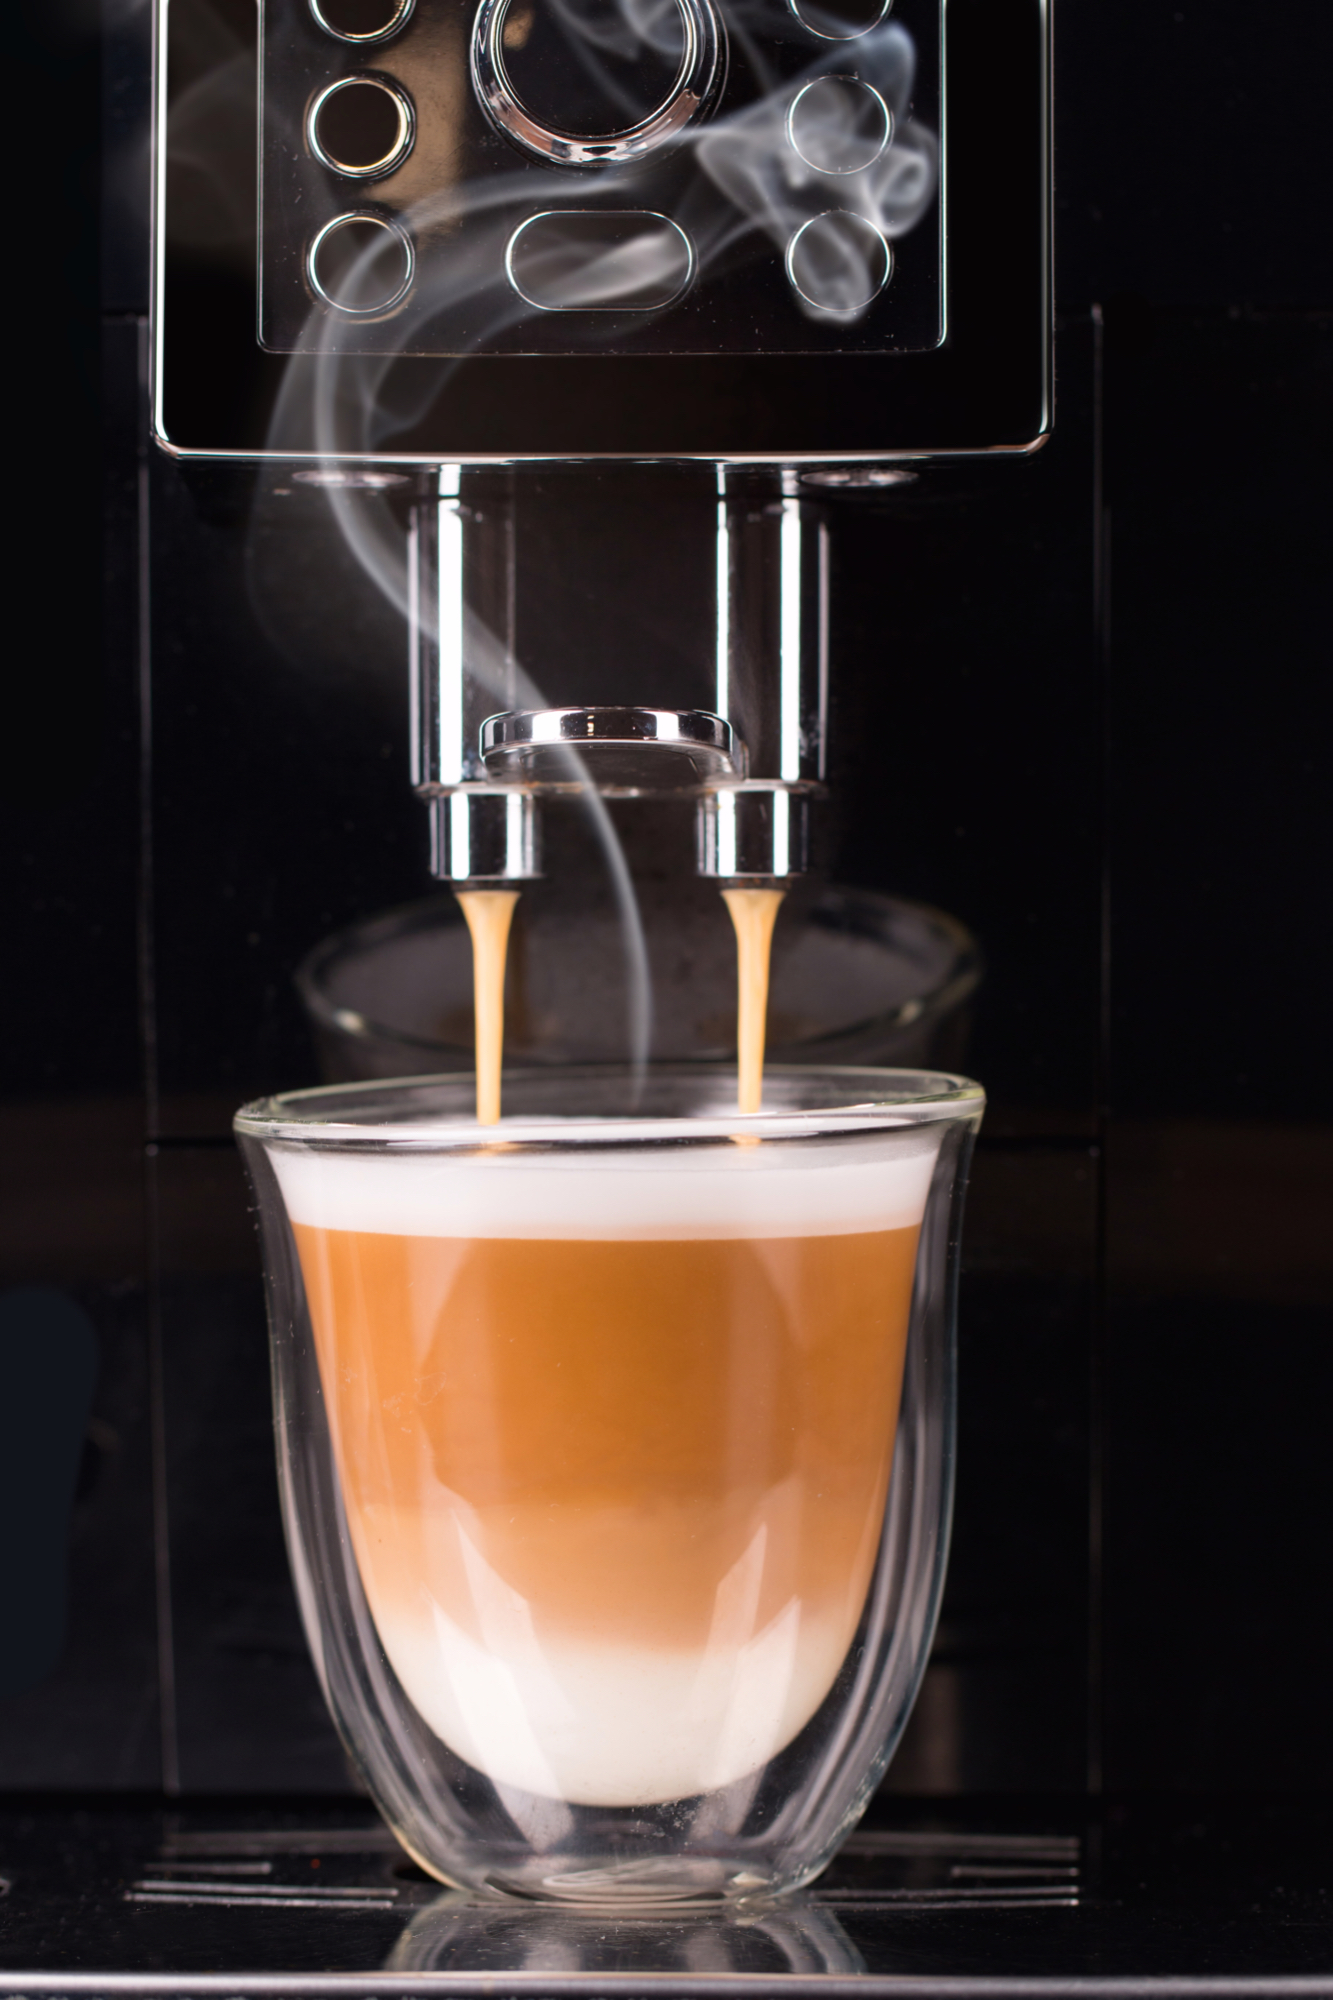 Kako znamo da su neki aparati za kavu stvarno kvalitetni?